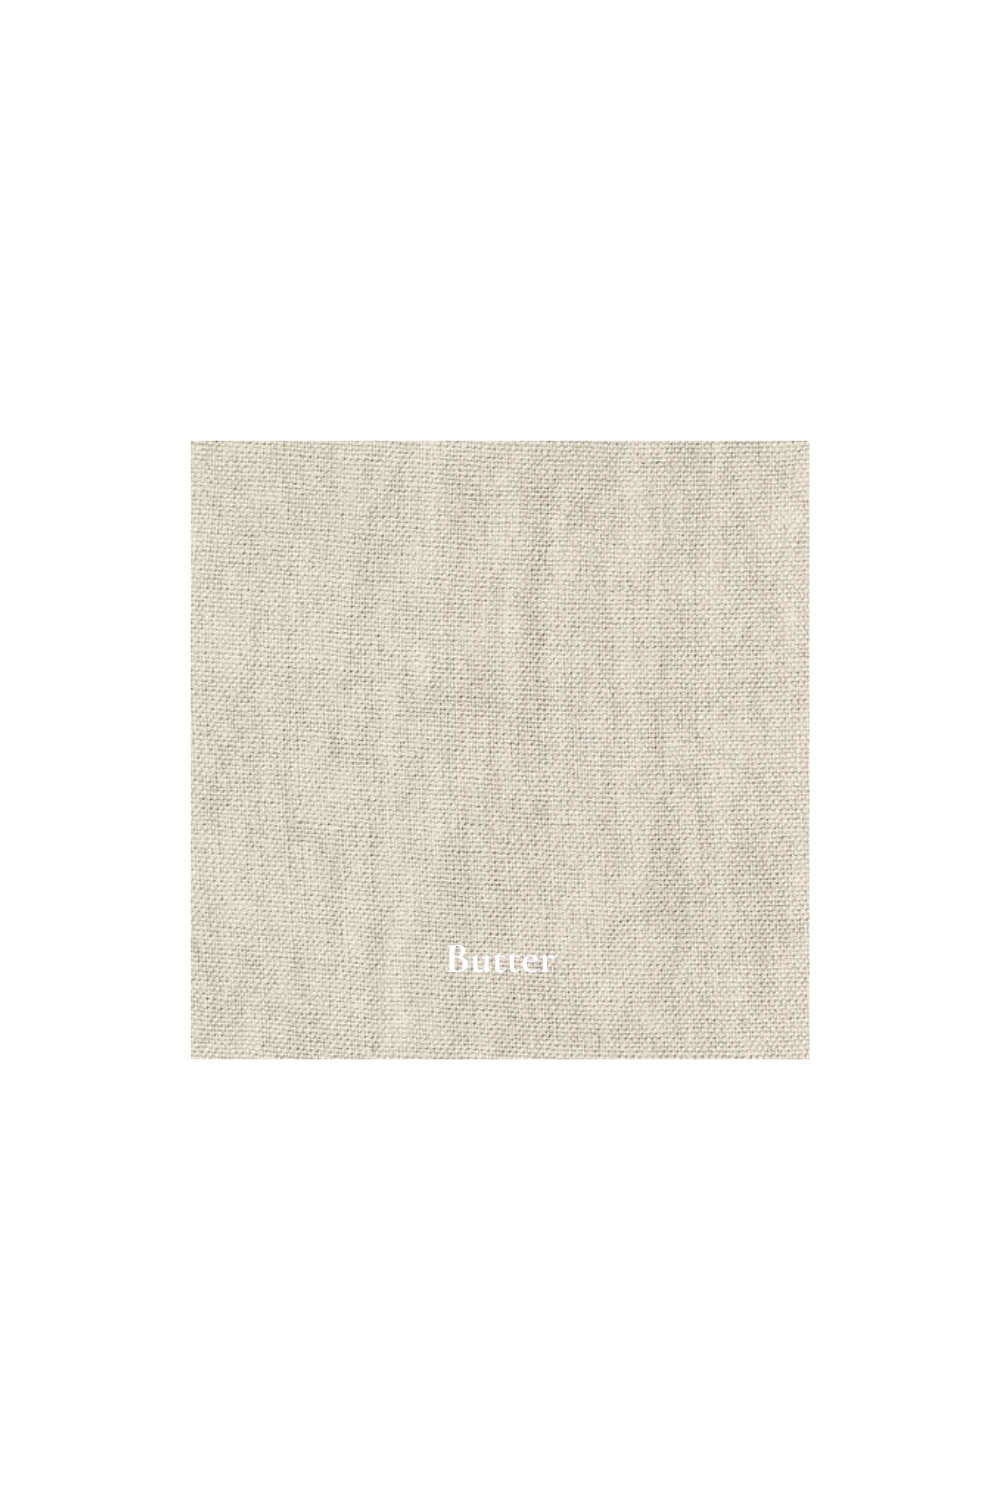 Color swatch of butter linen fabric - Gervasoni indoor fabrics